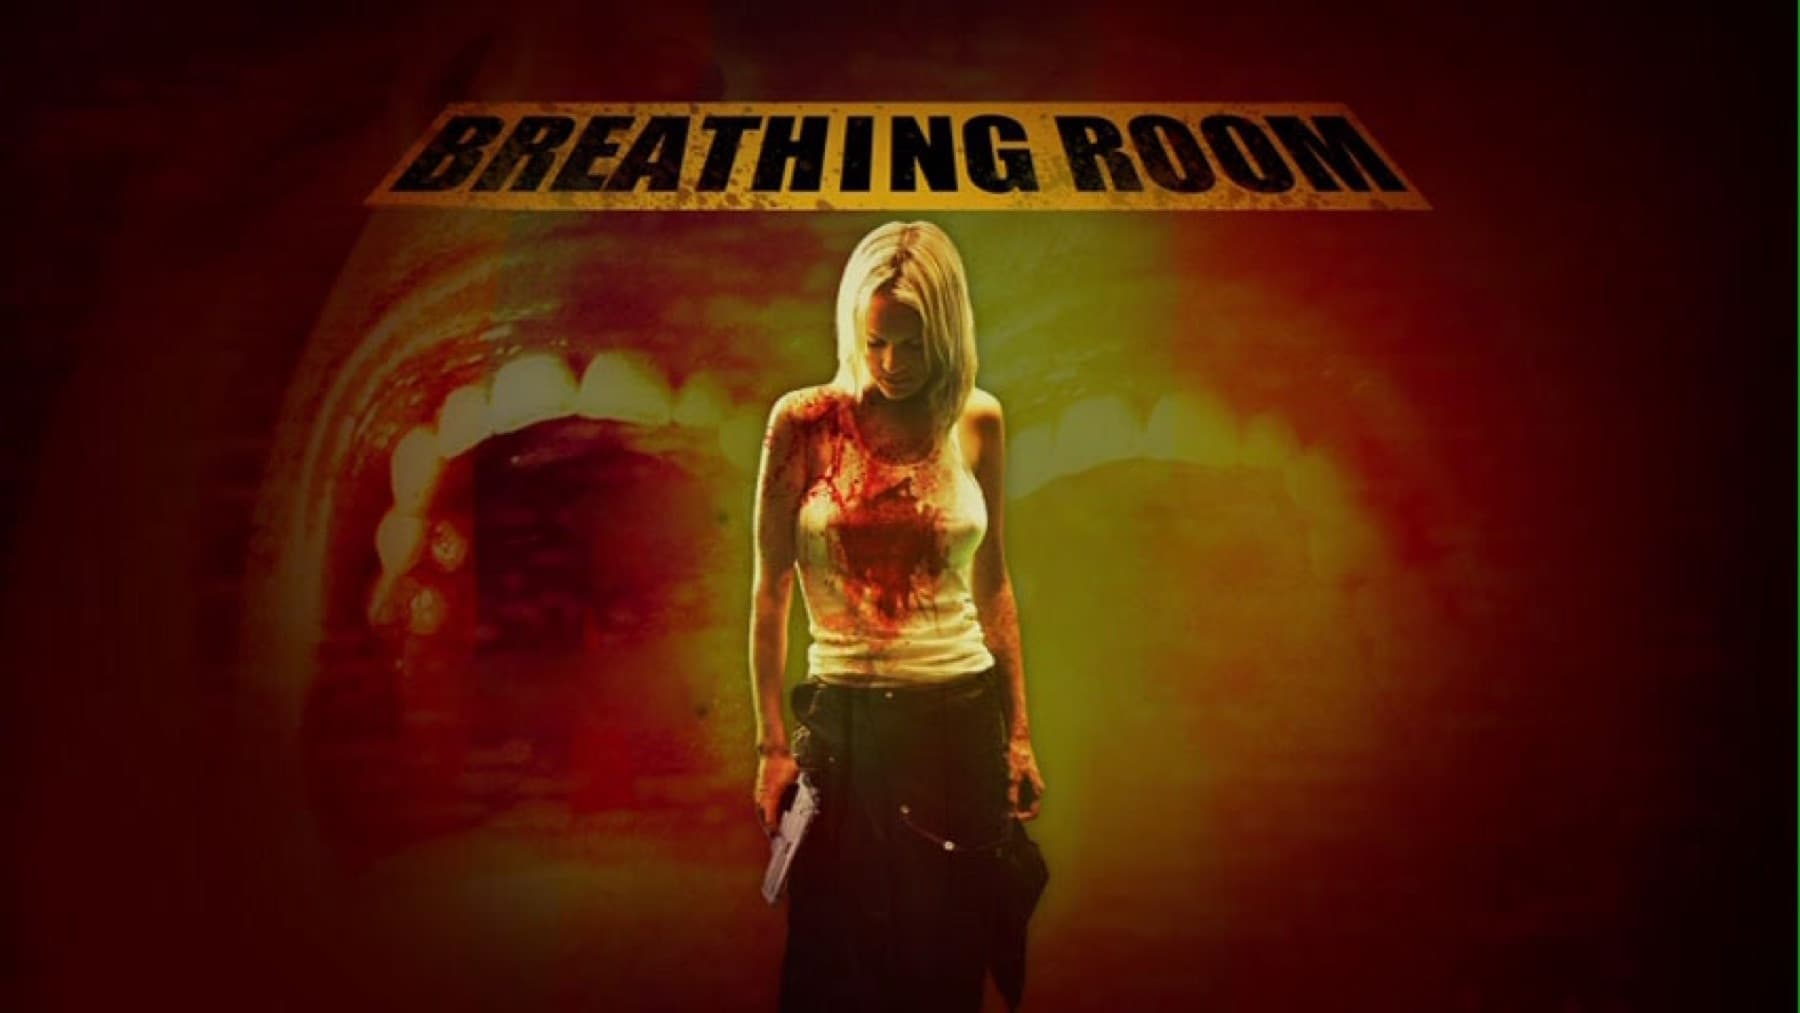 Breathing Room 2008 123movies